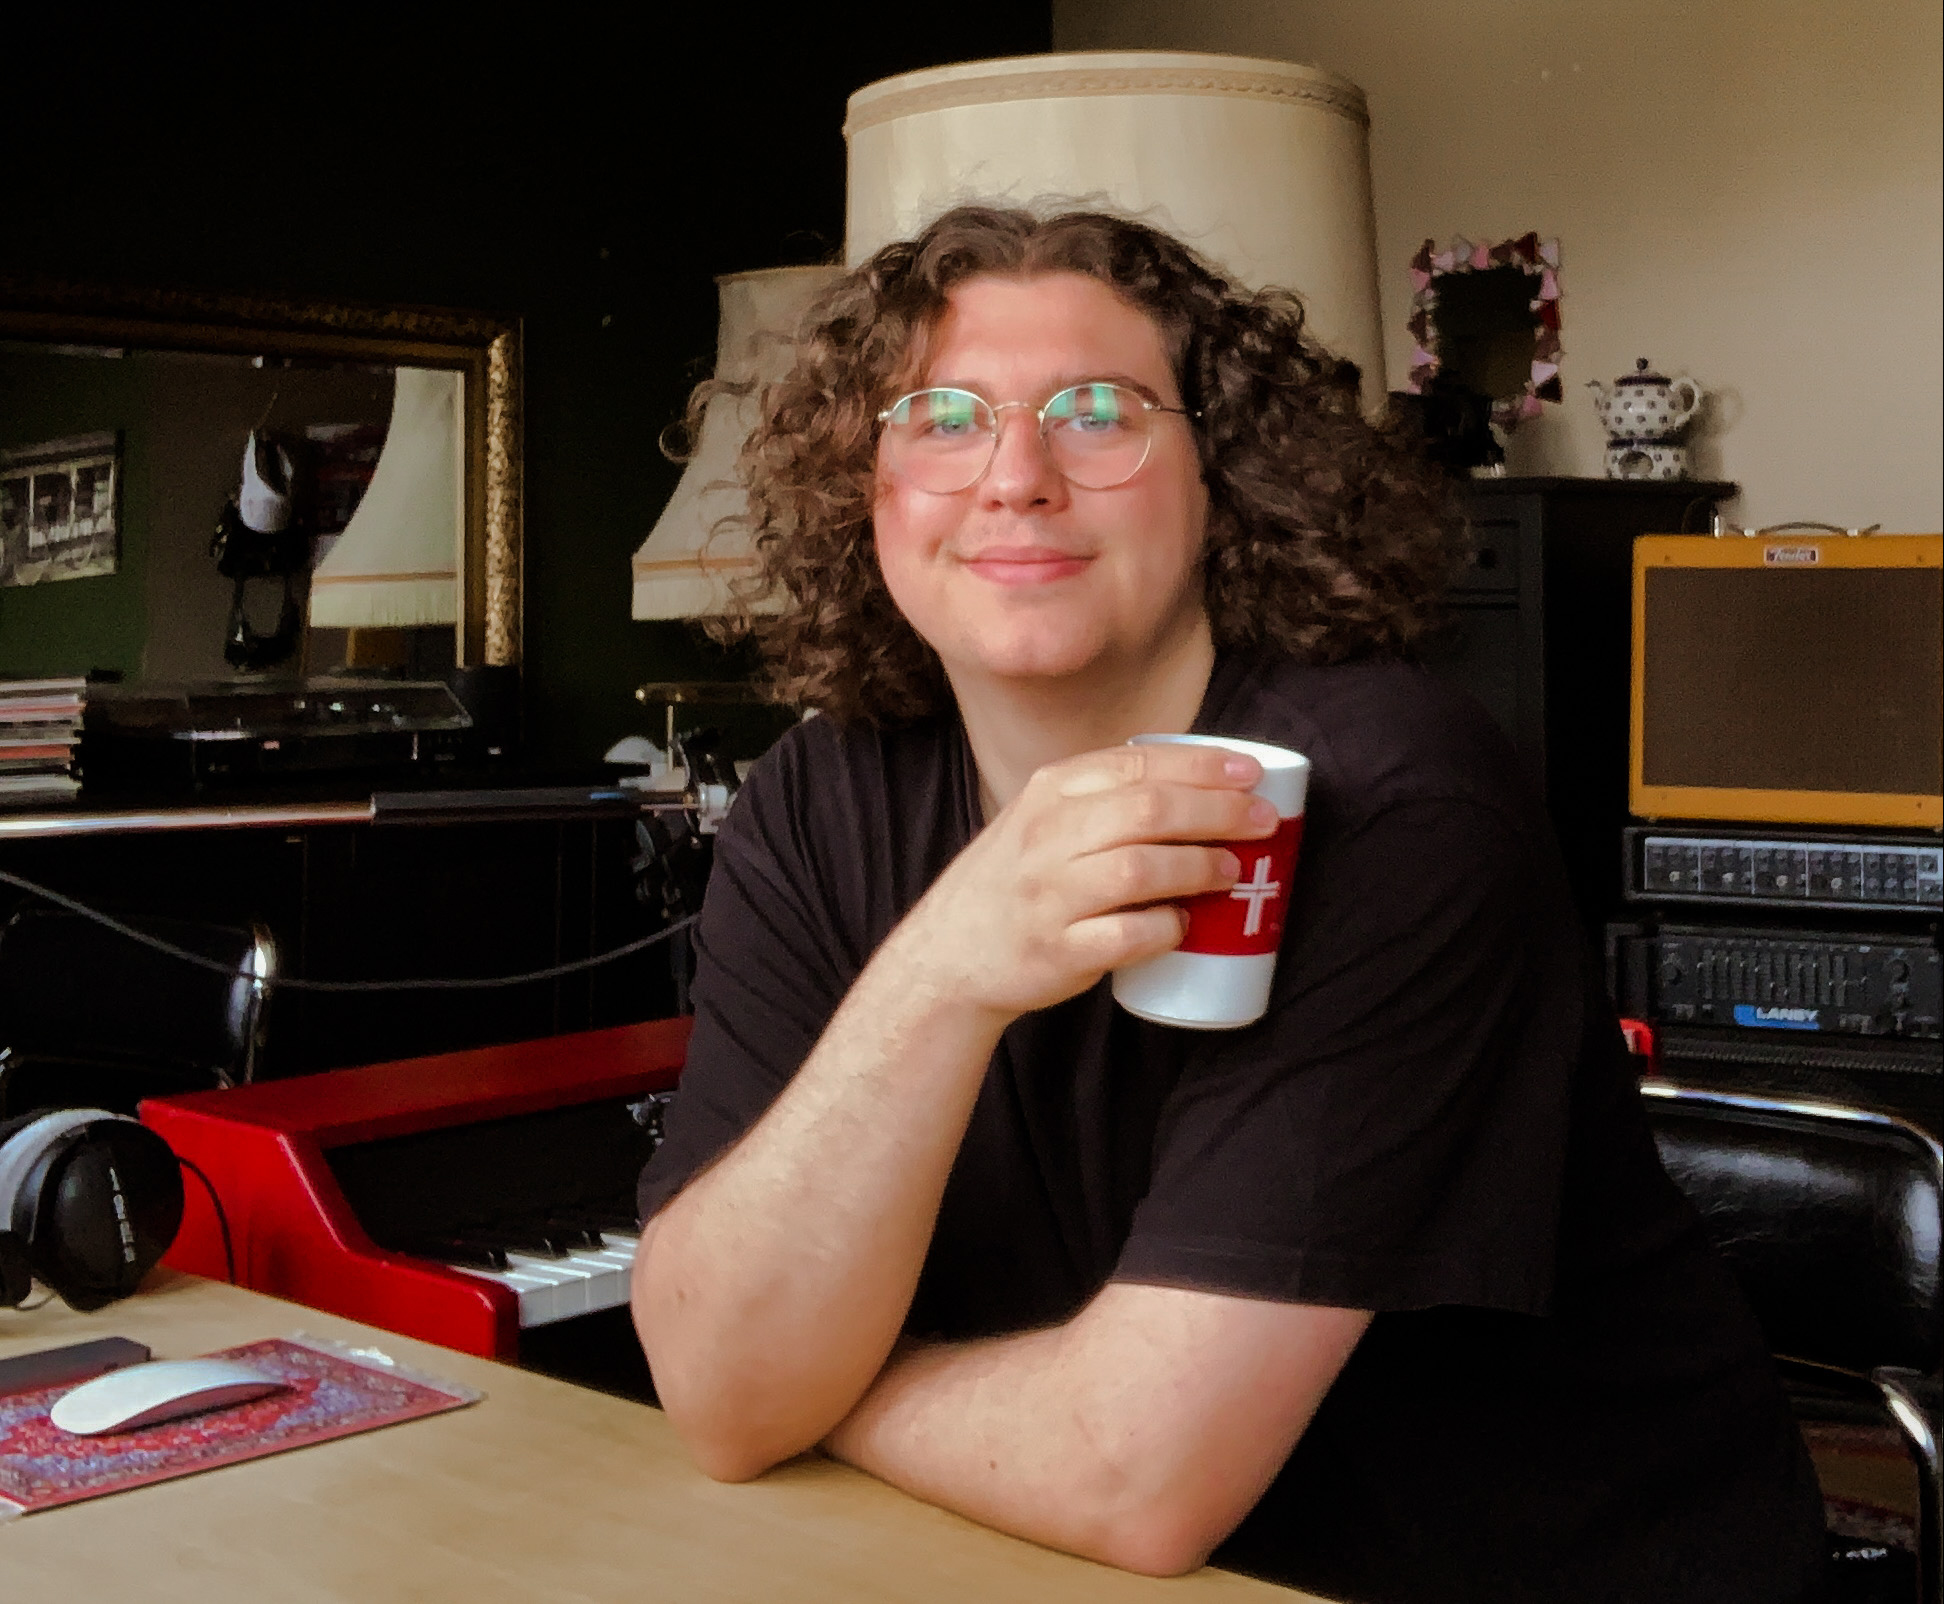 Musikstudent Caspar Beule in seinem Studio mit einem Kaffeebecher in der Hand